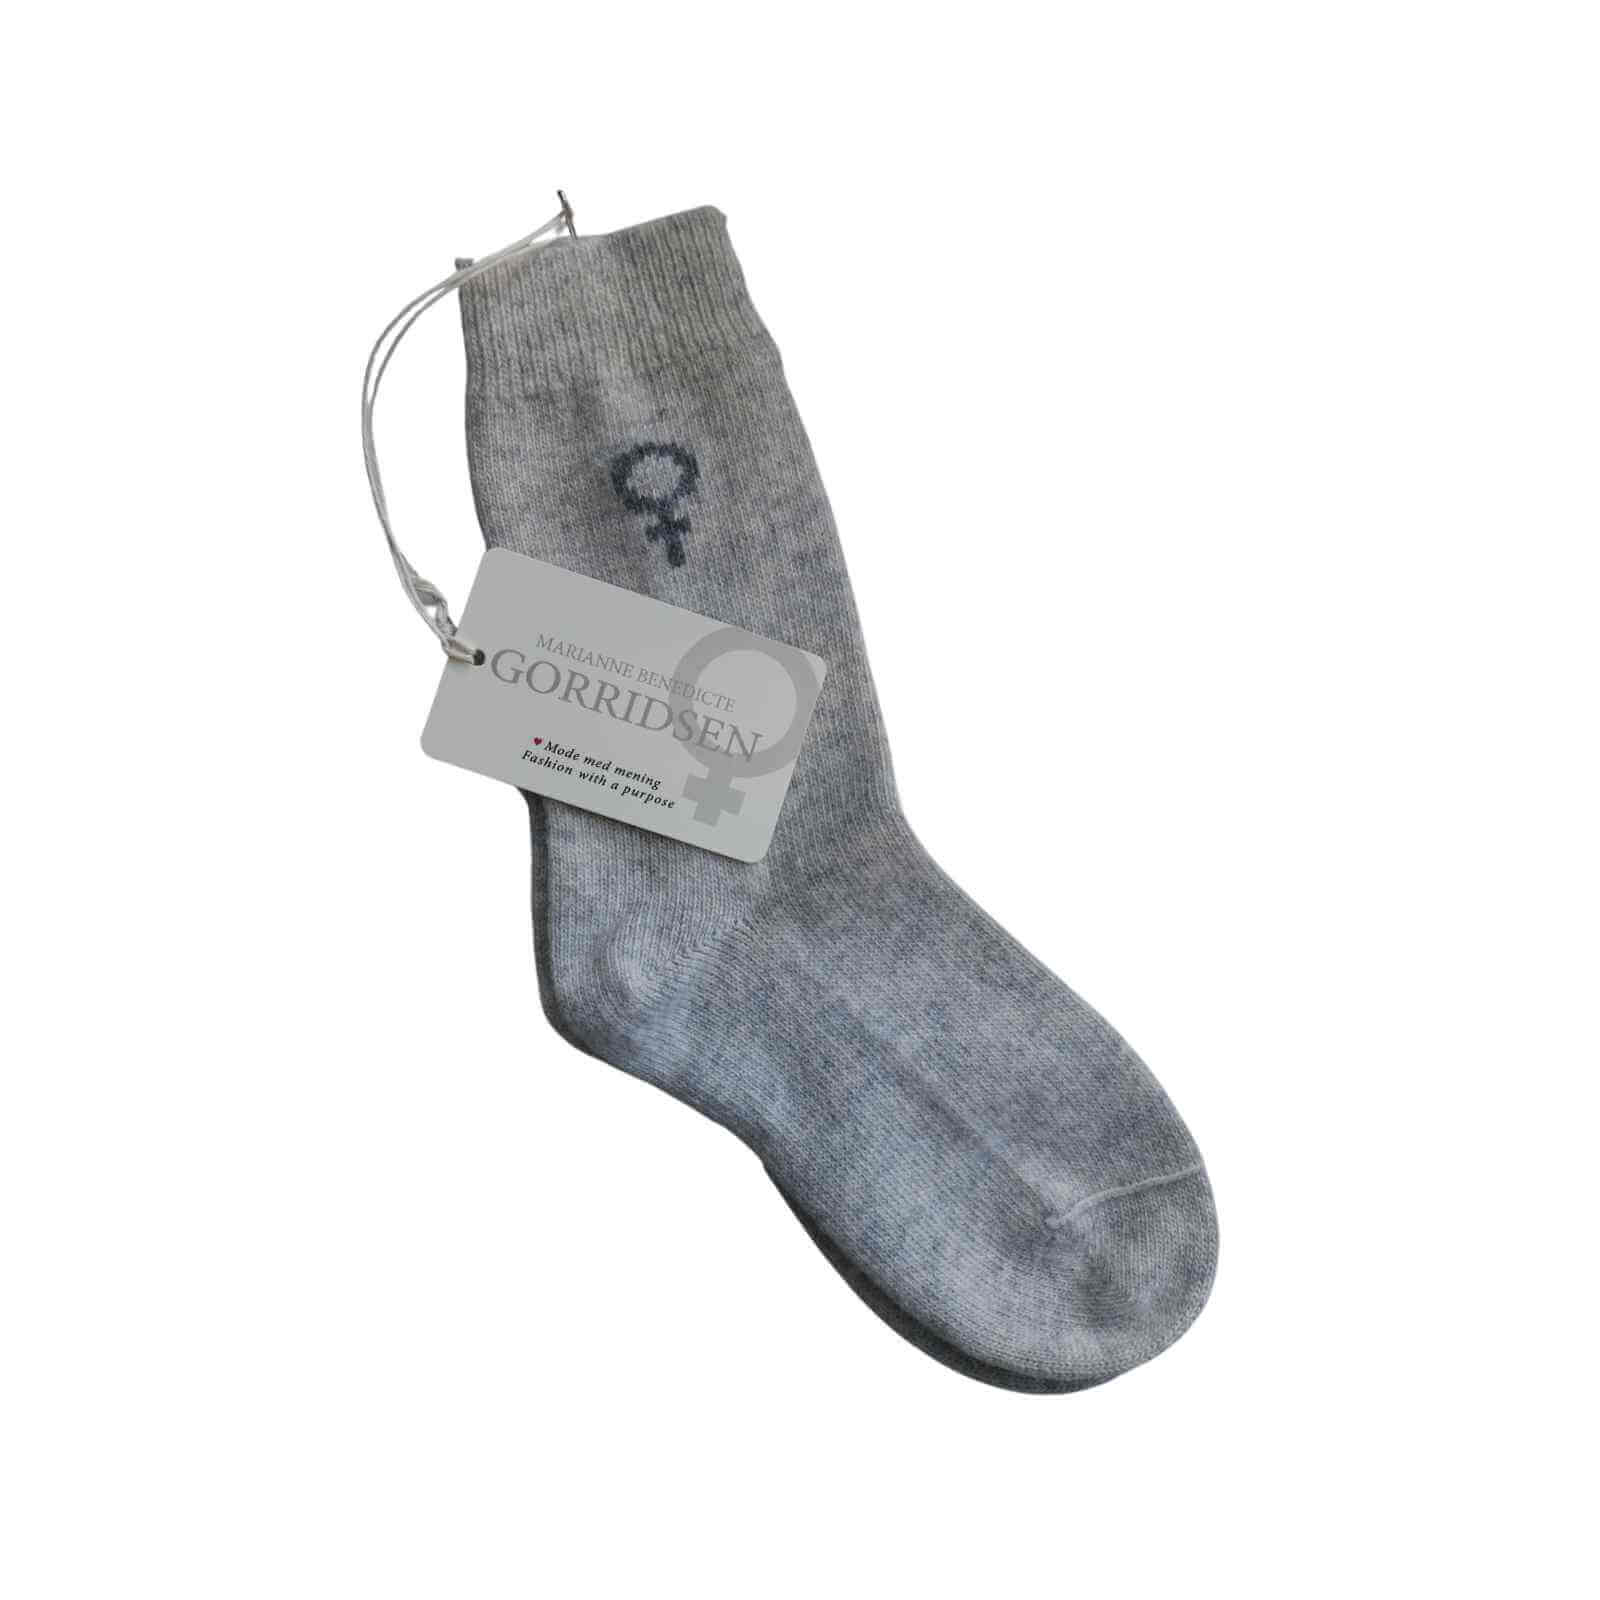 Lysegrå uld sokker fra Gorridsen med kvindetegn